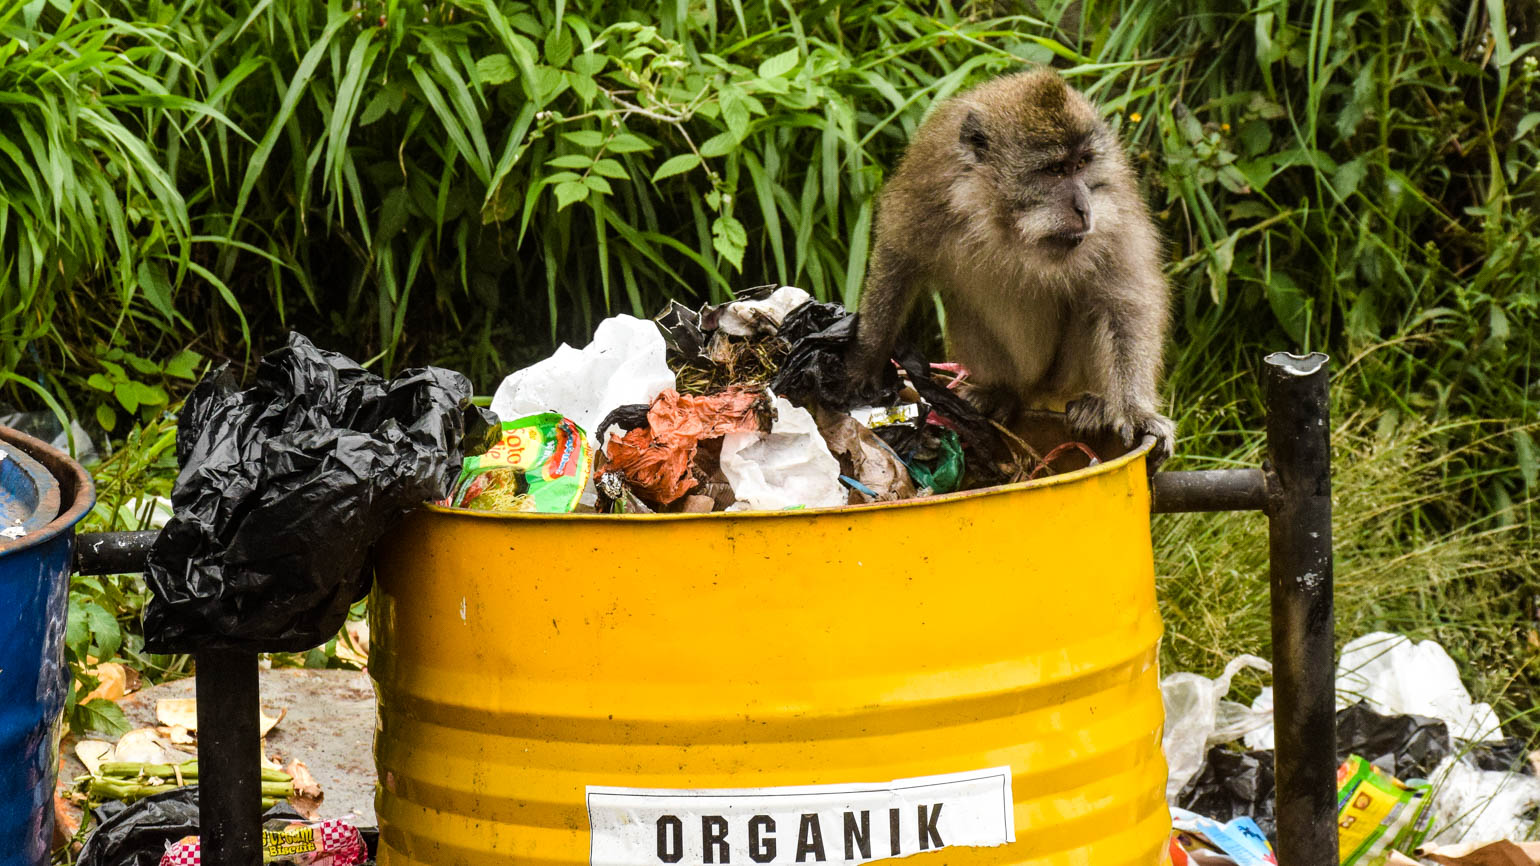 Macaco à procura de comida em caixote de lixo orgânico.